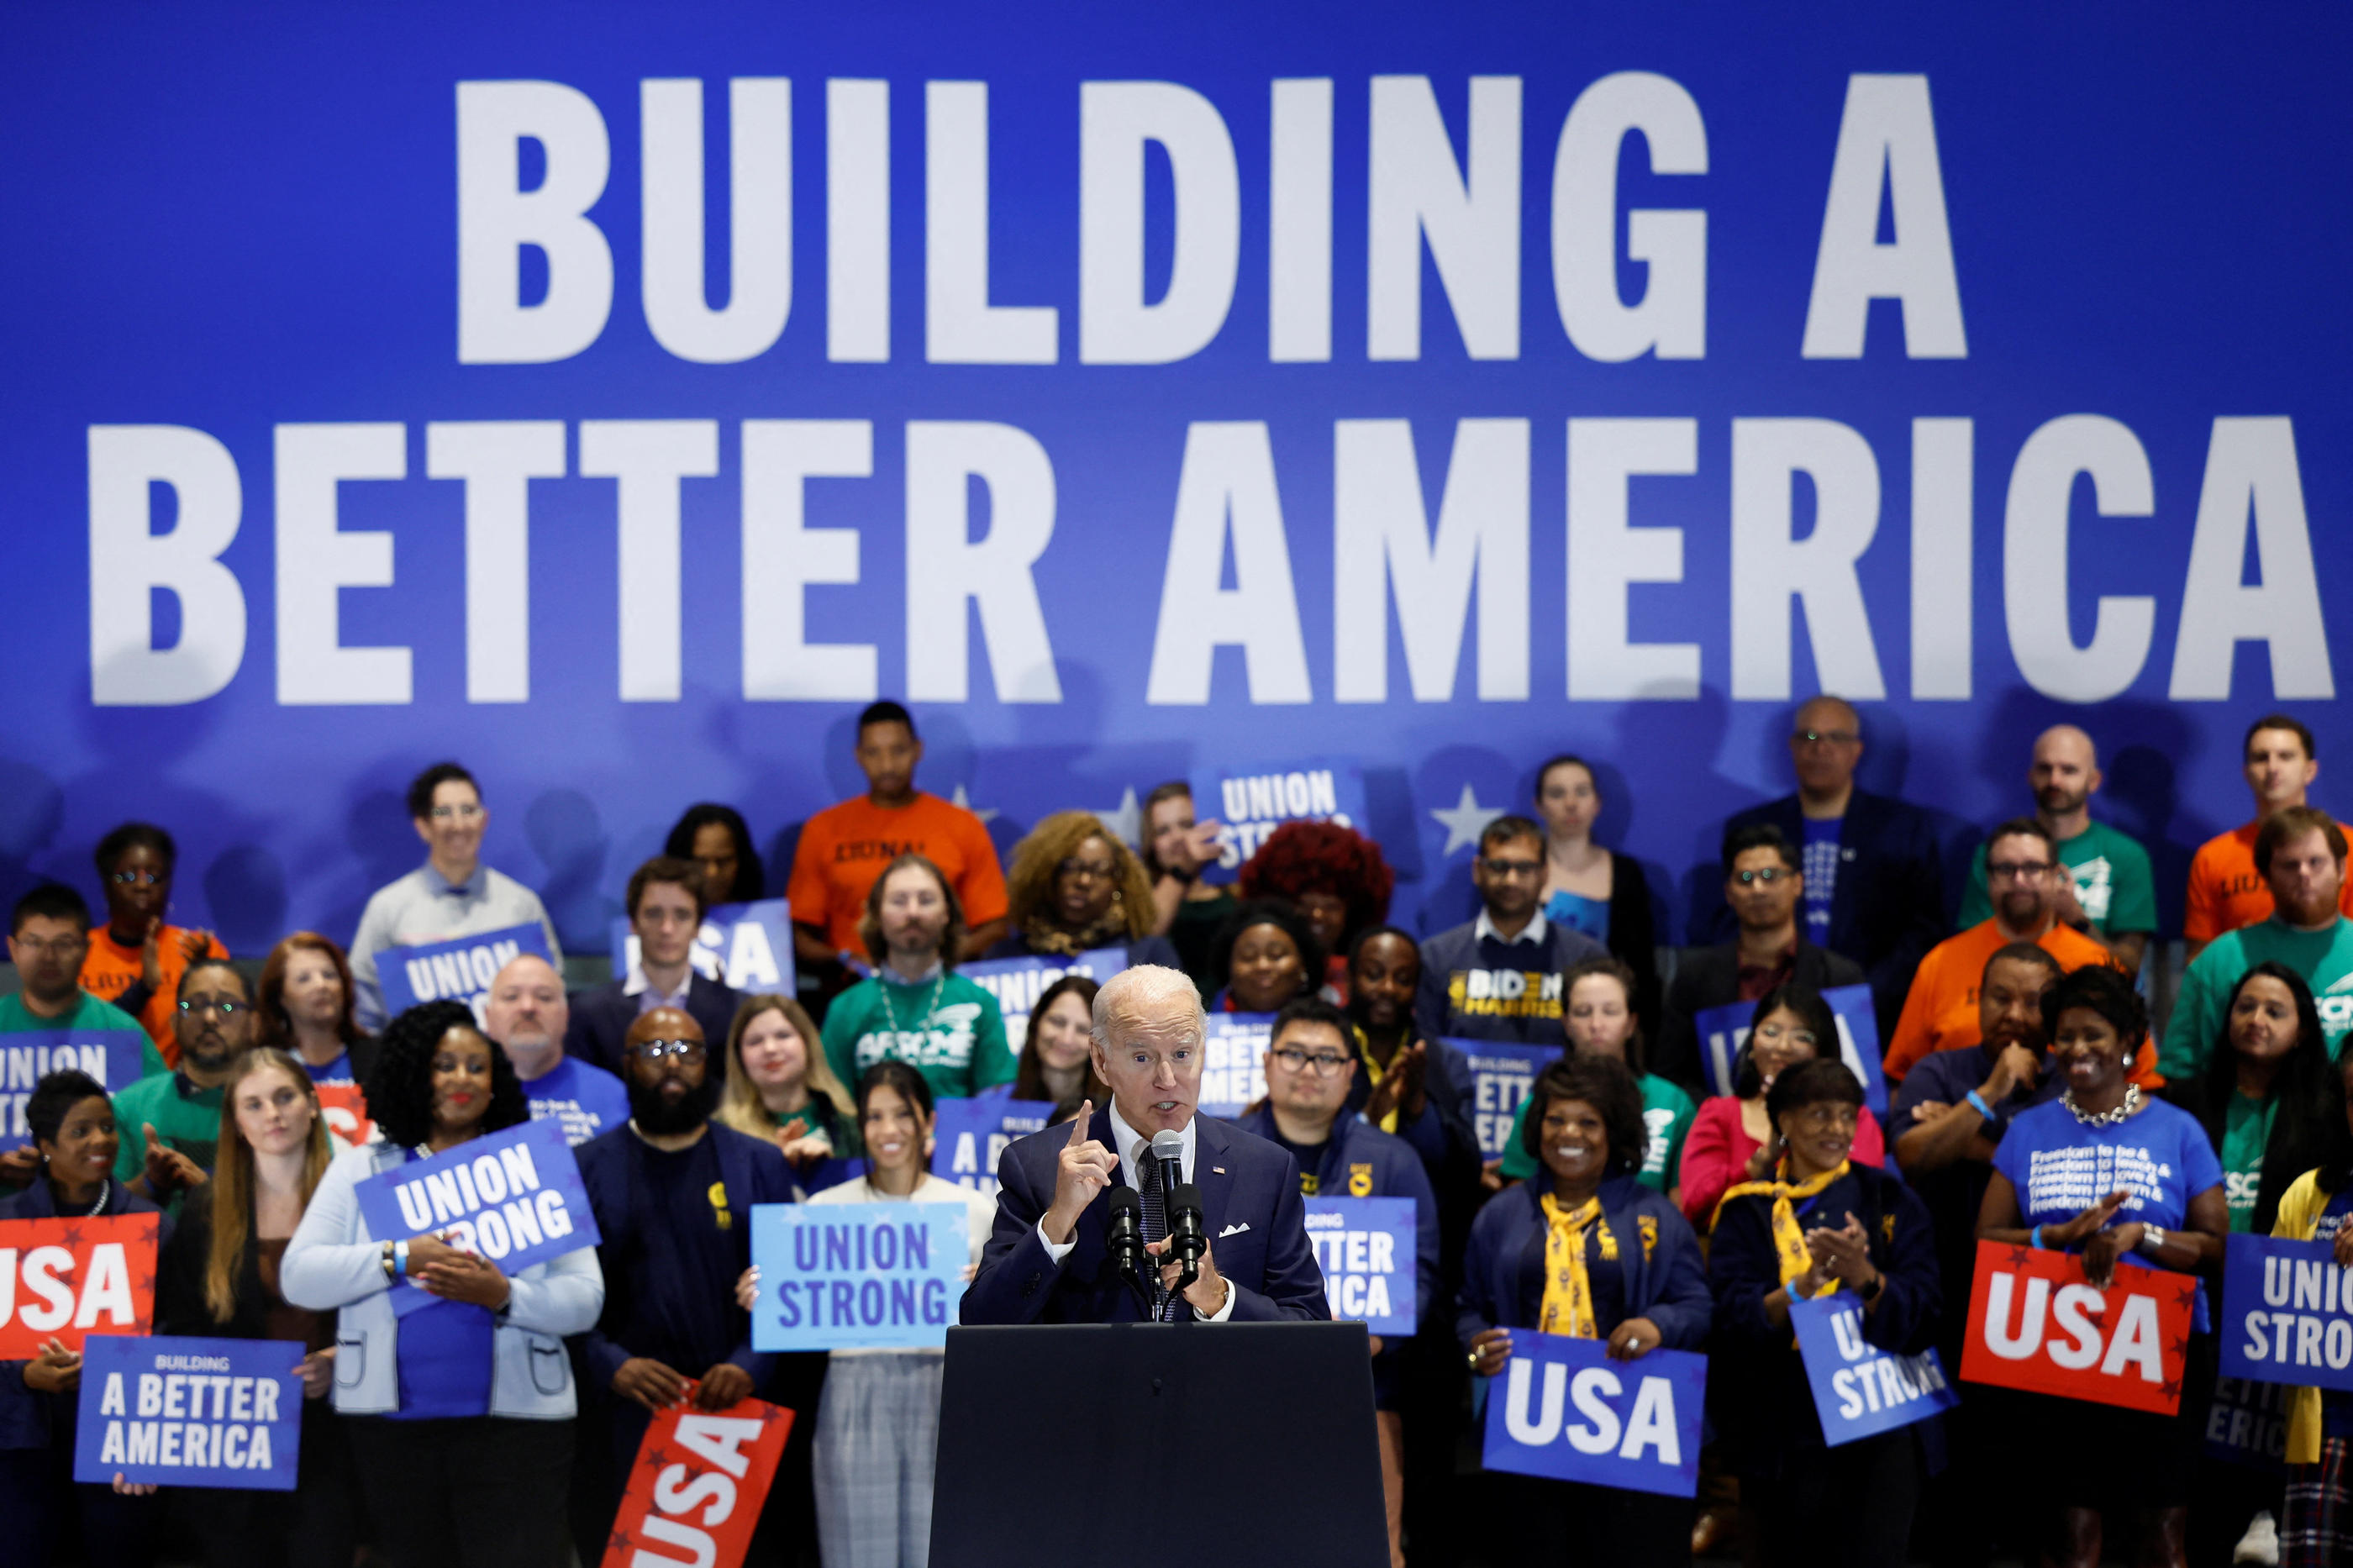 Le président Joe Biden, lors du Comité national des démocrates à Washington vendredi. REUTERS/Evelyn Hockstein